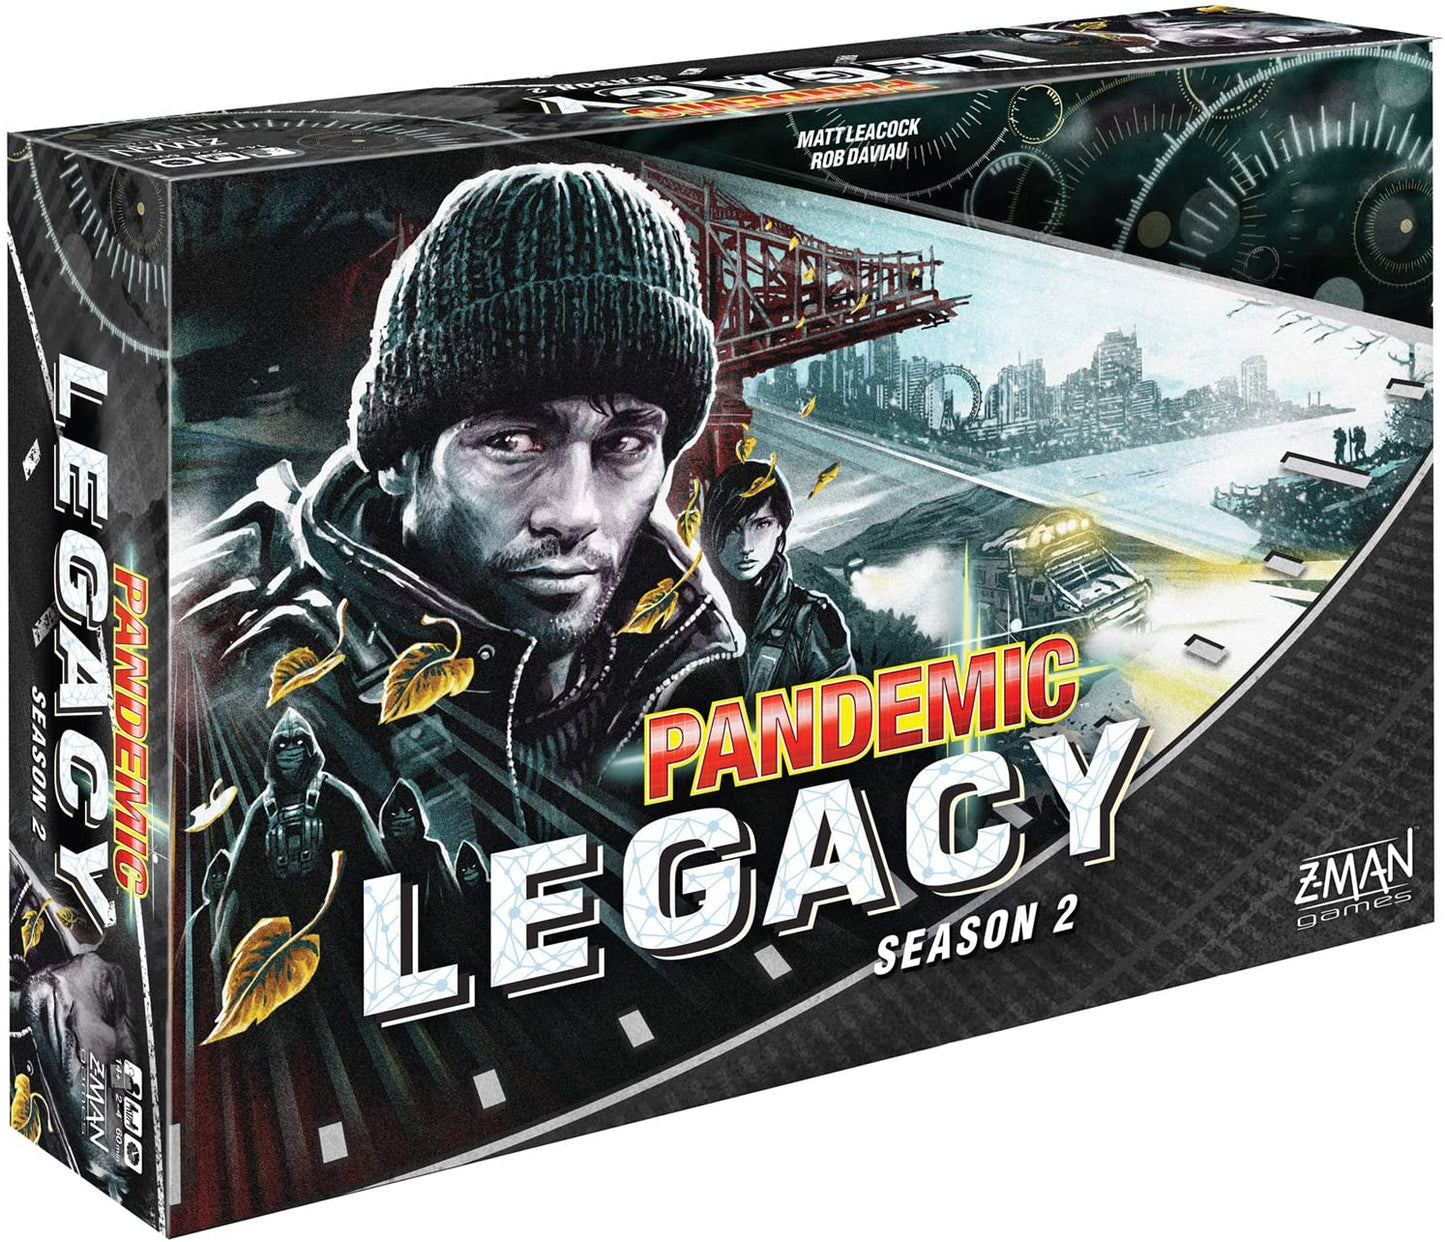 Pandemic Legacy Season 2 (black) - Gamescape